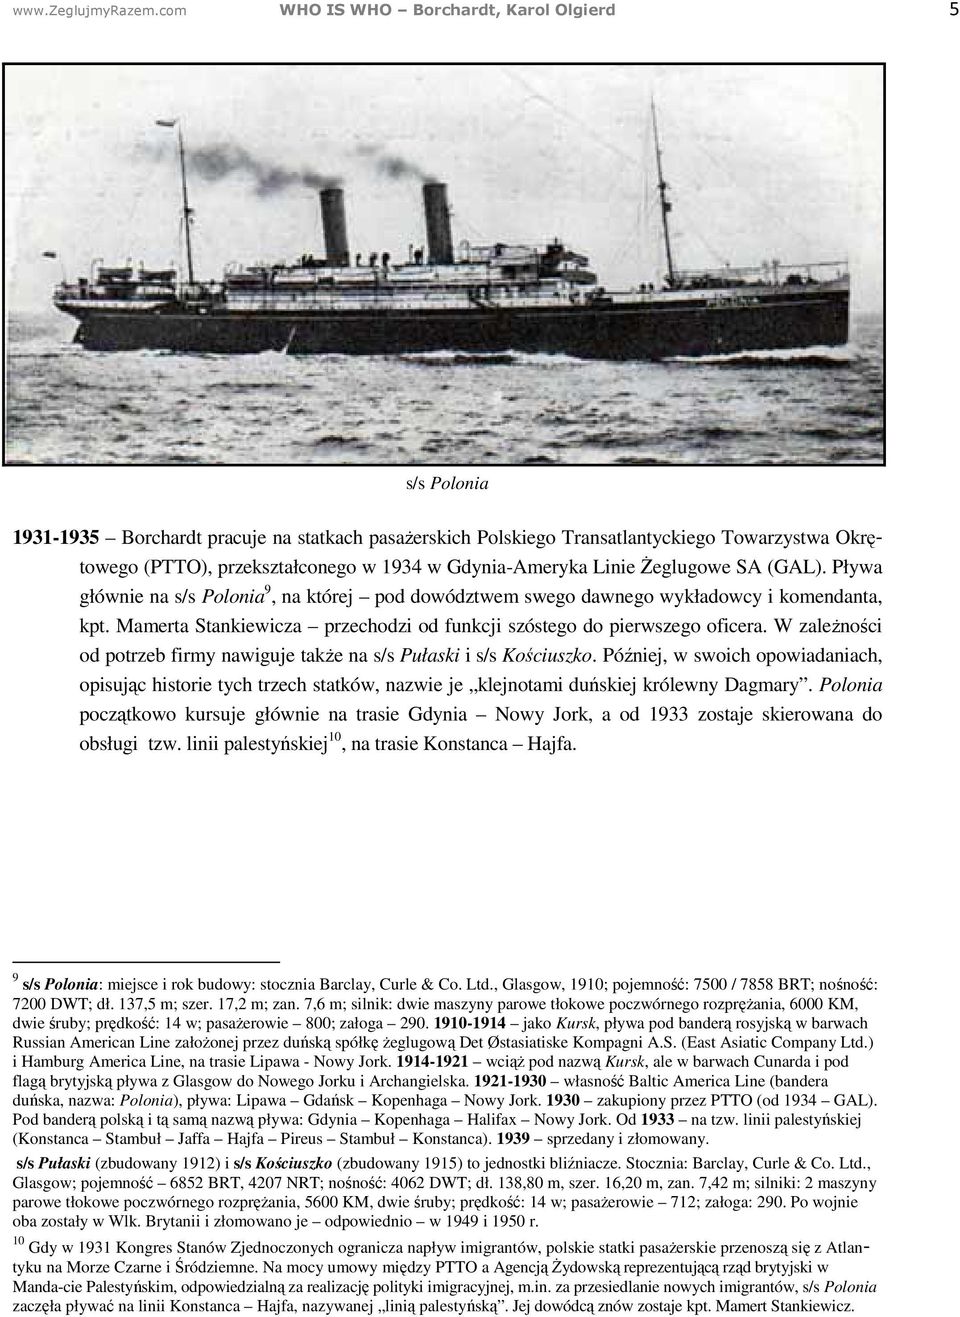 Gdynia-Ameryka Linie Żeglugowe SA (GAL). Pływa głównie na s/s Polonia 9, na której pod dowództwem swego dawnego wykładowcy i komendanta, kpt.